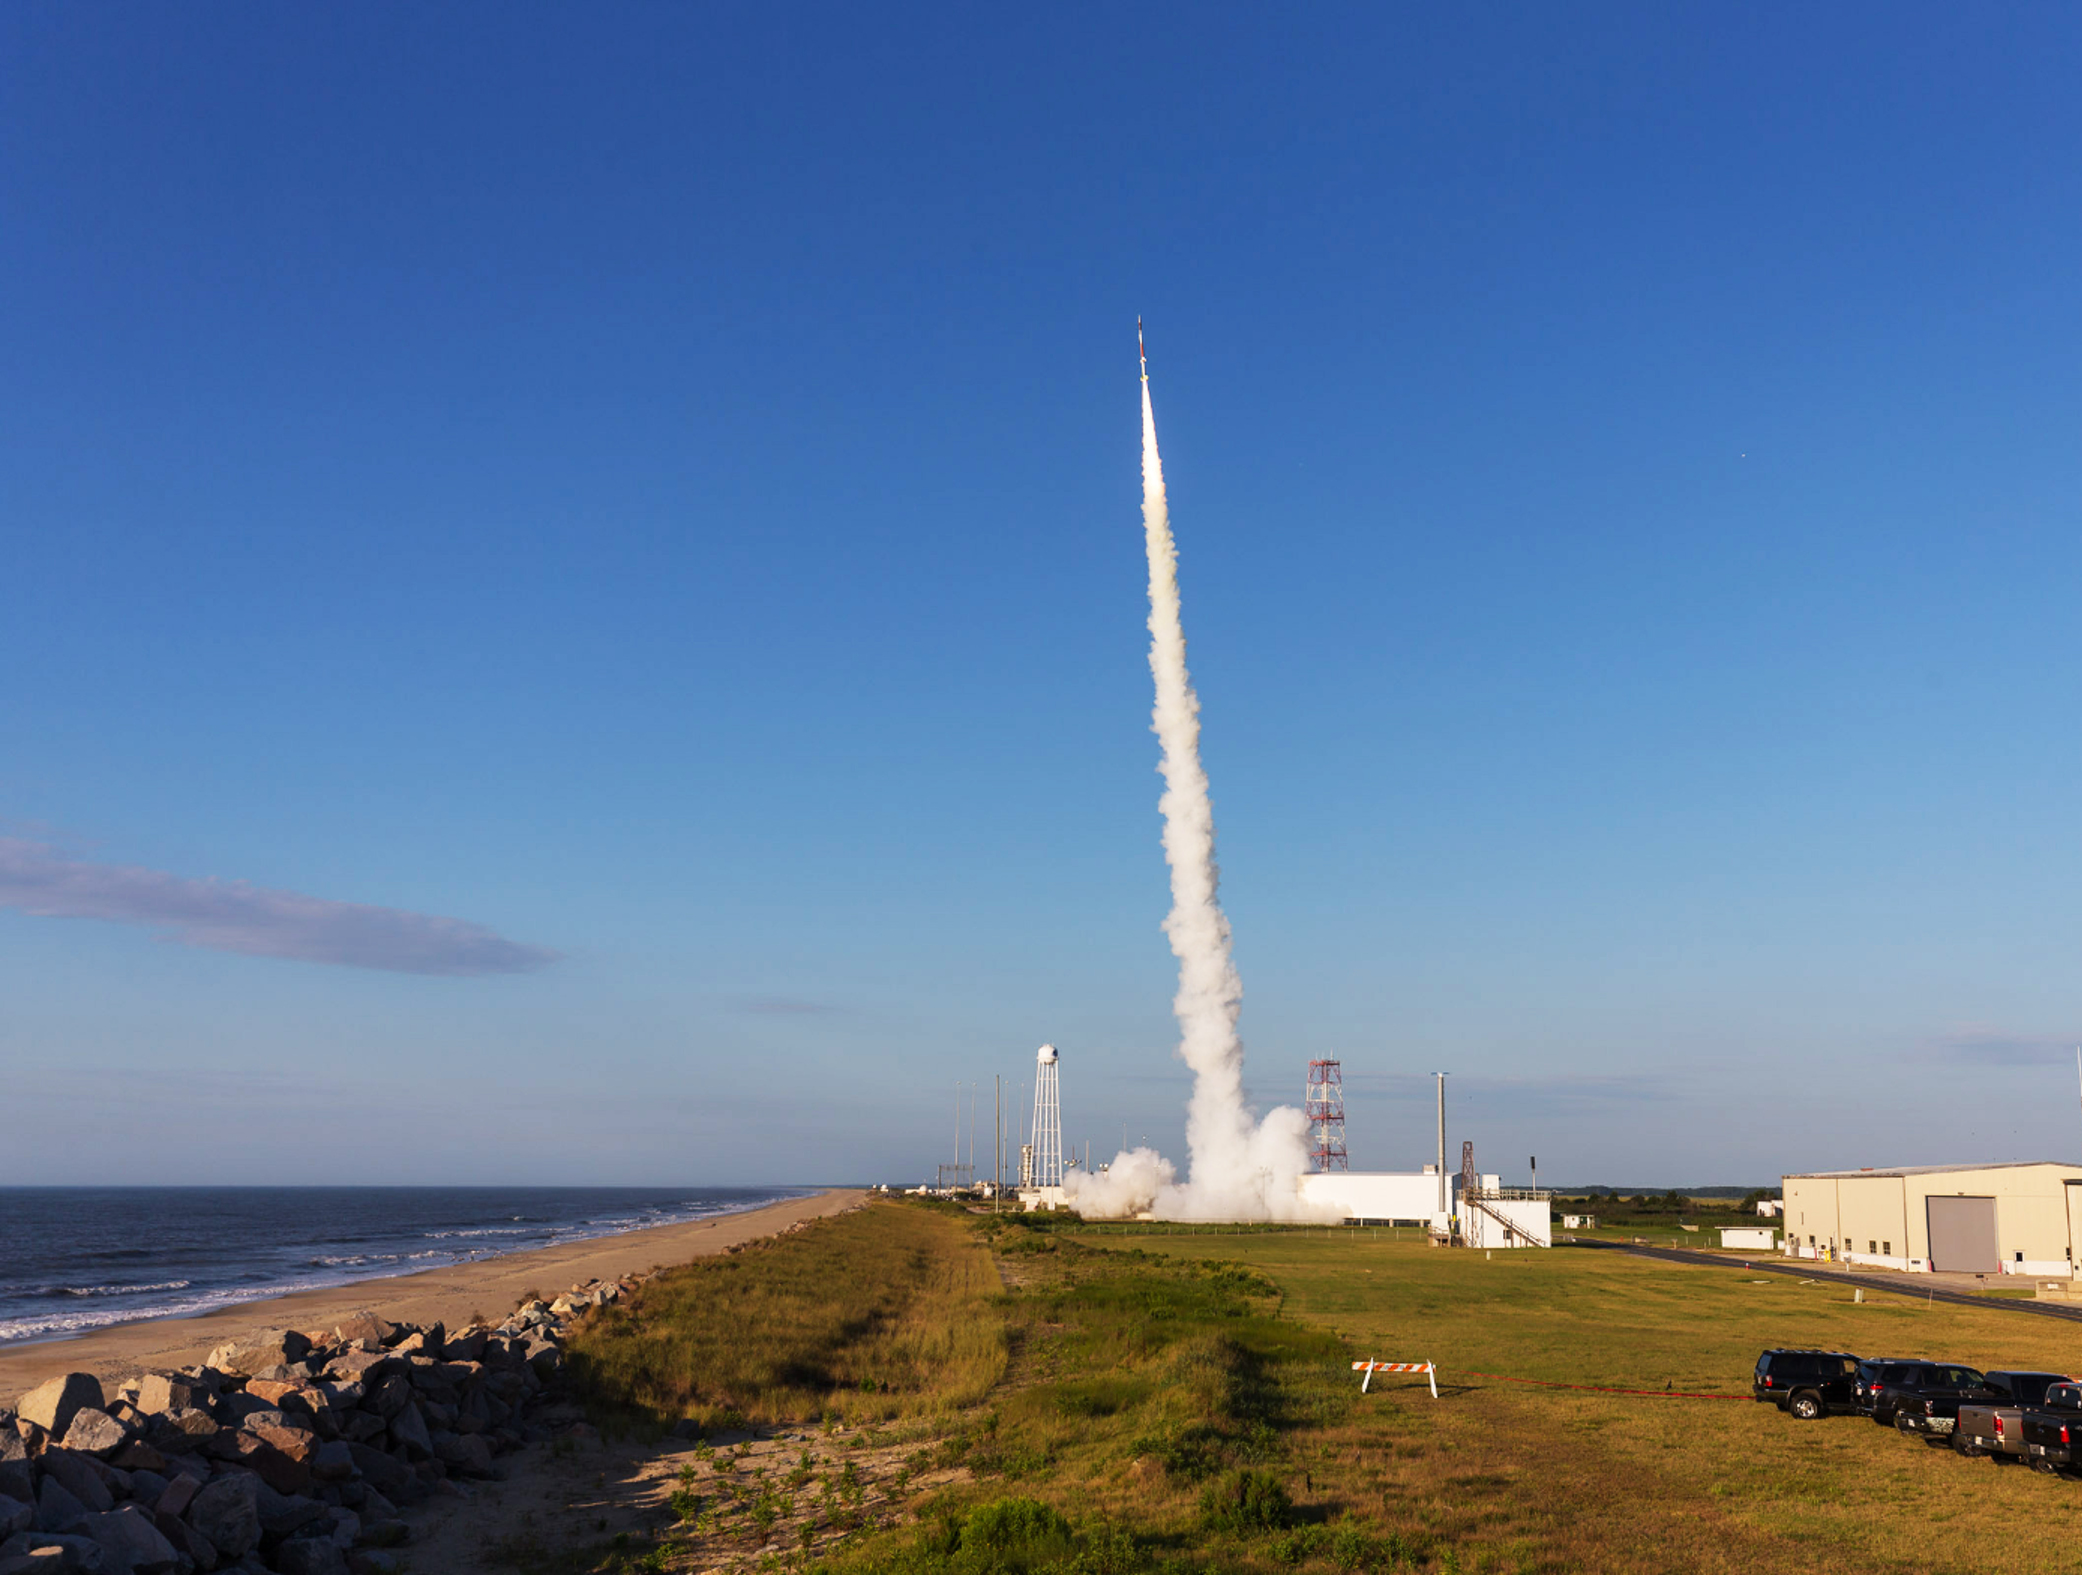 sounding rocket (from GSFC flickr)